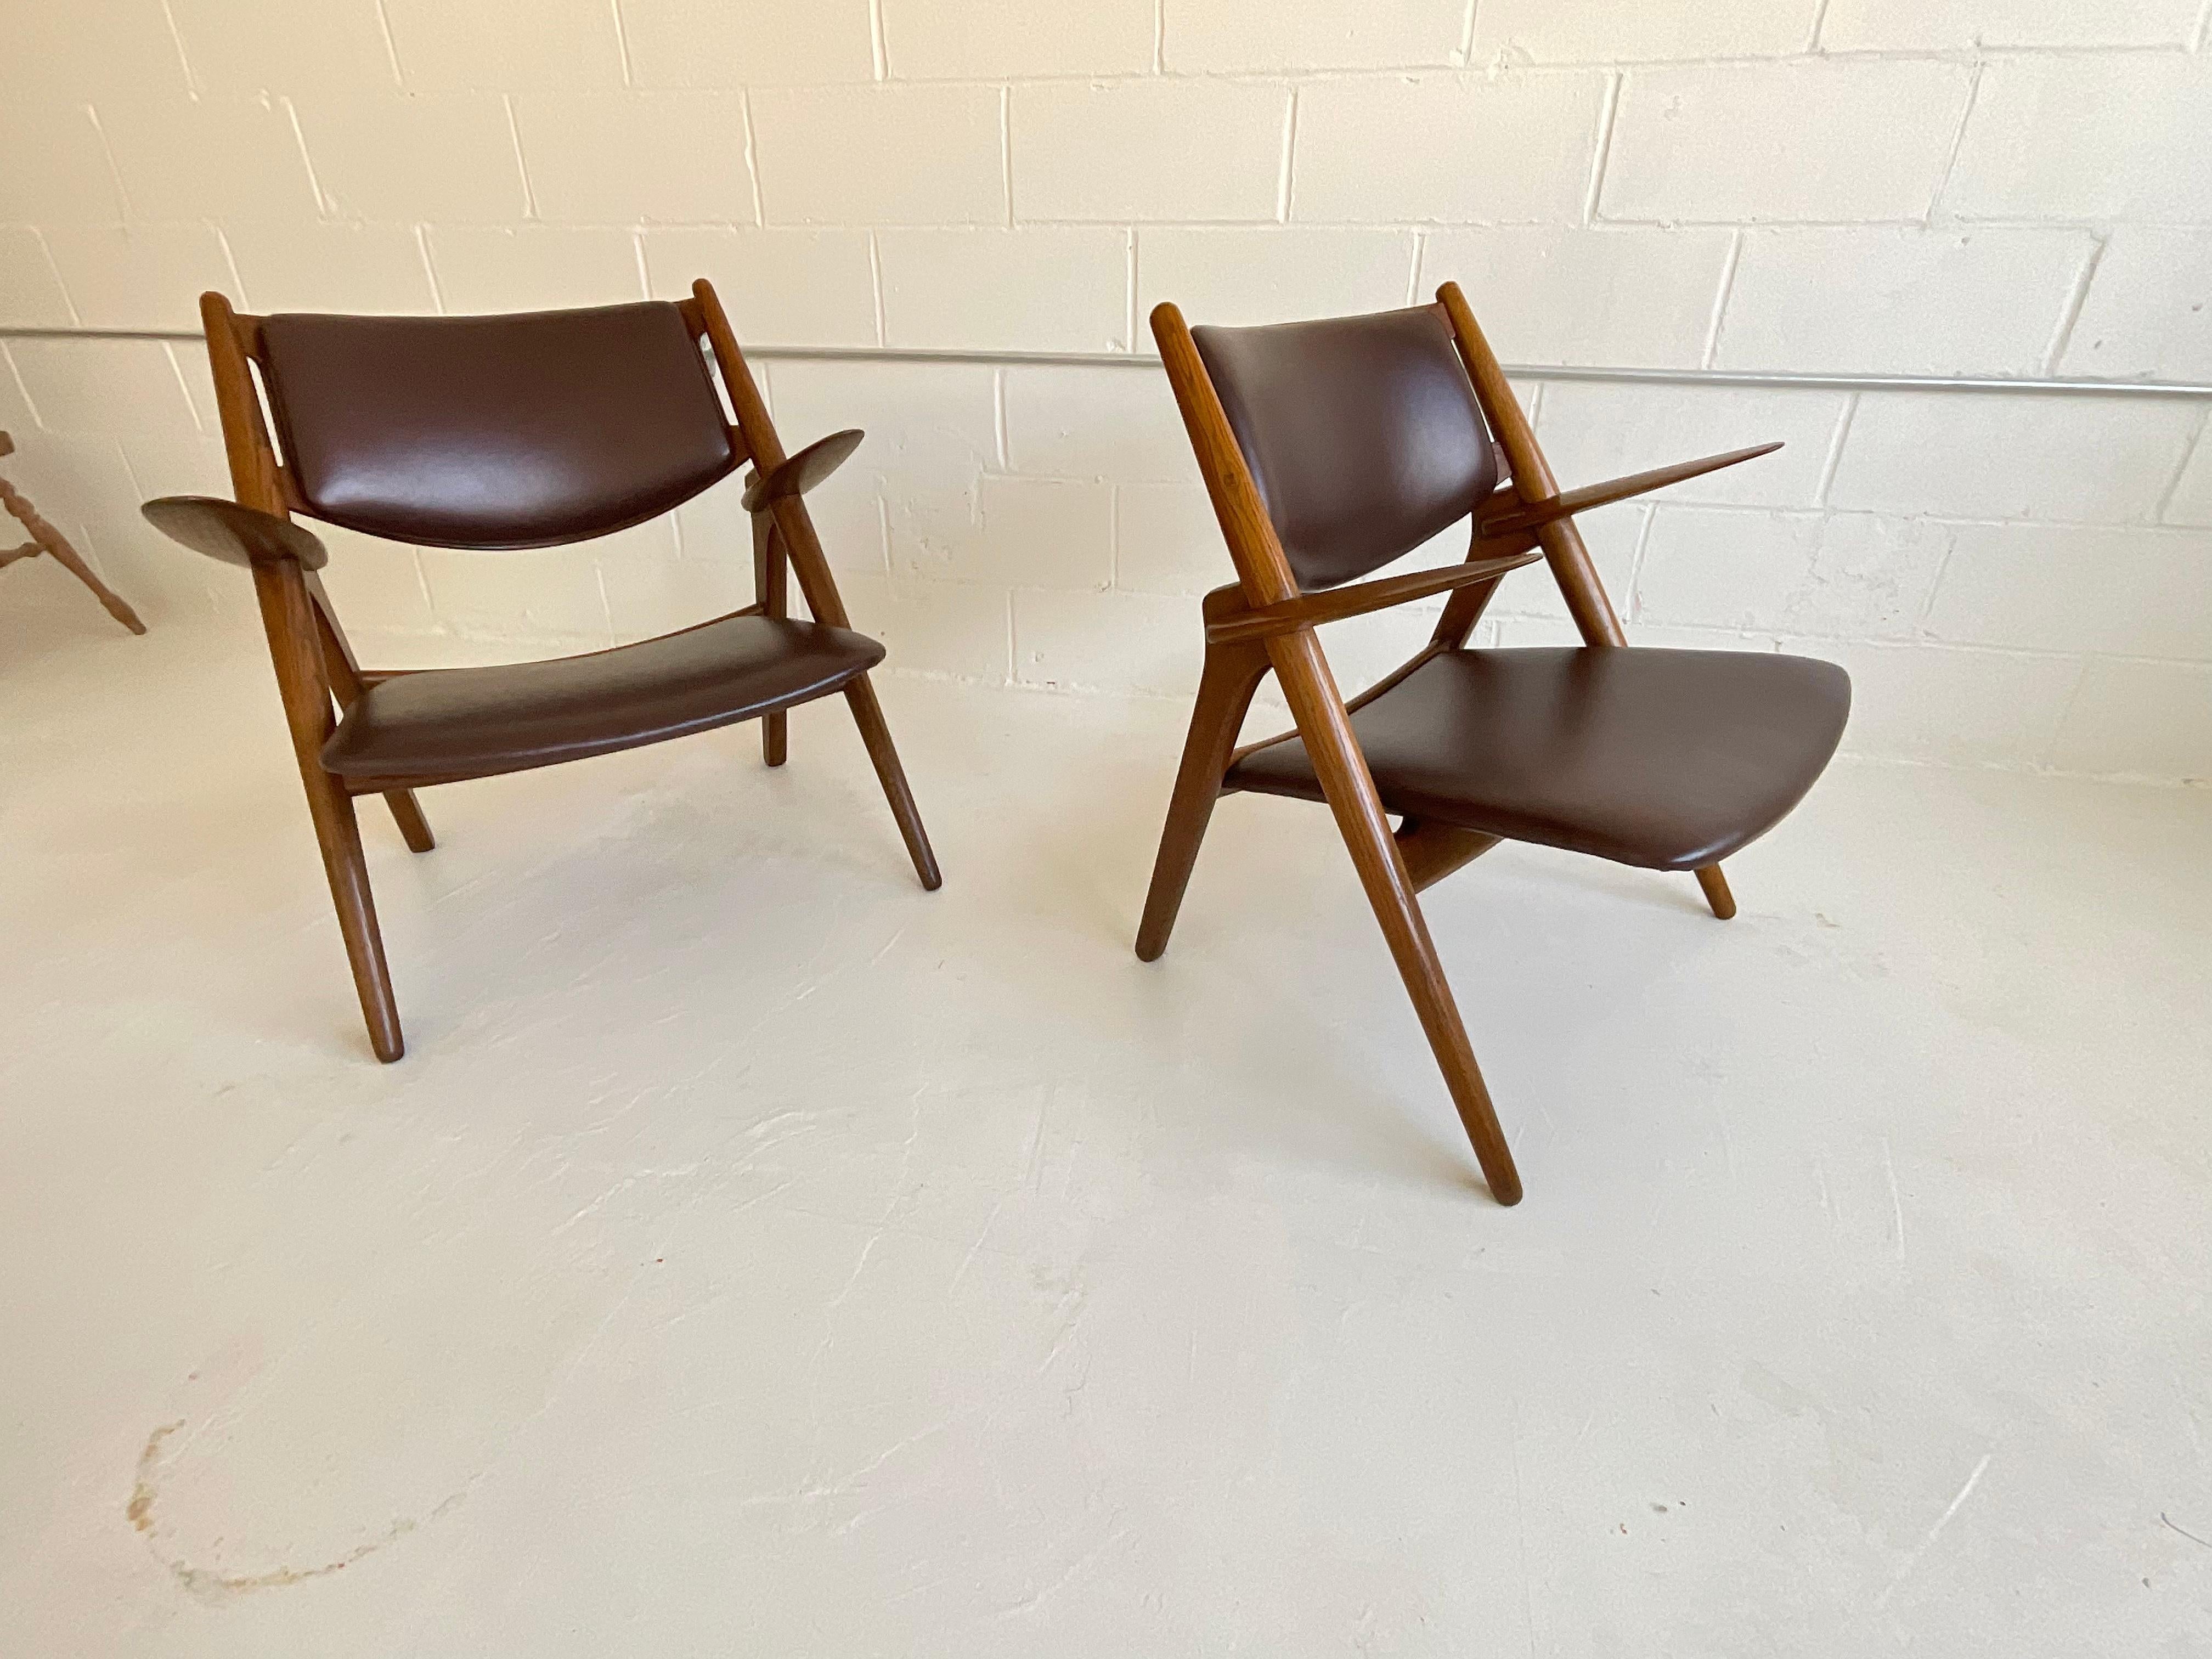 Une icône du stille design du 20e siècle est toujours célébrée 72 ans après son lancement : la chaise Sawbuck de Hans Wegner pour Carl Hansen, 1951. Montaperto Studios a le plaisir de proposer une paire vintage en chêne et cuir italien marron de